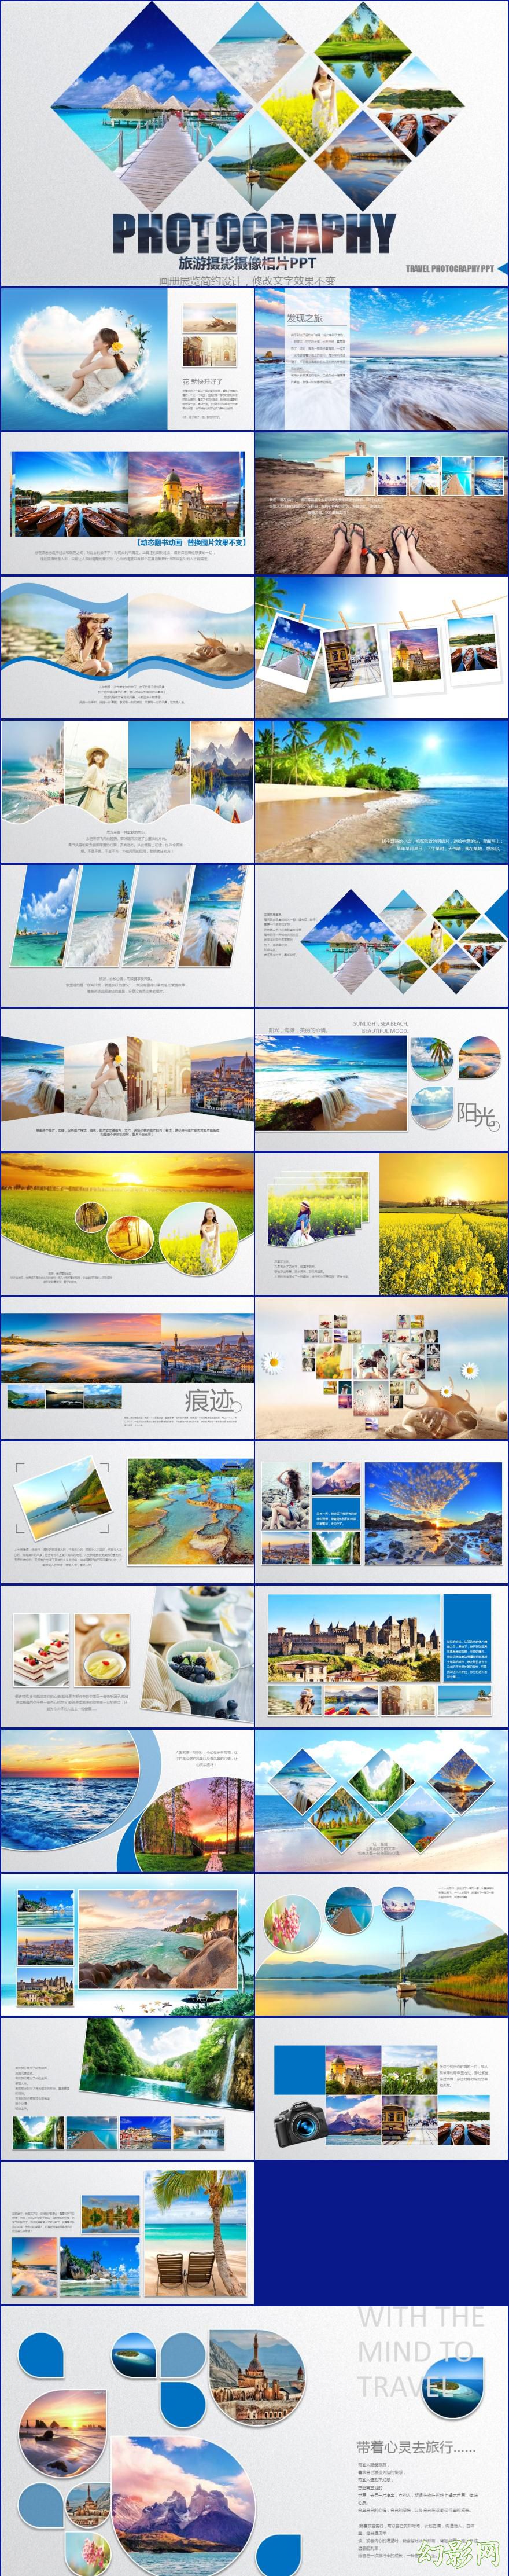 企业宣传画册电子相册旅游相册动态ppt模板